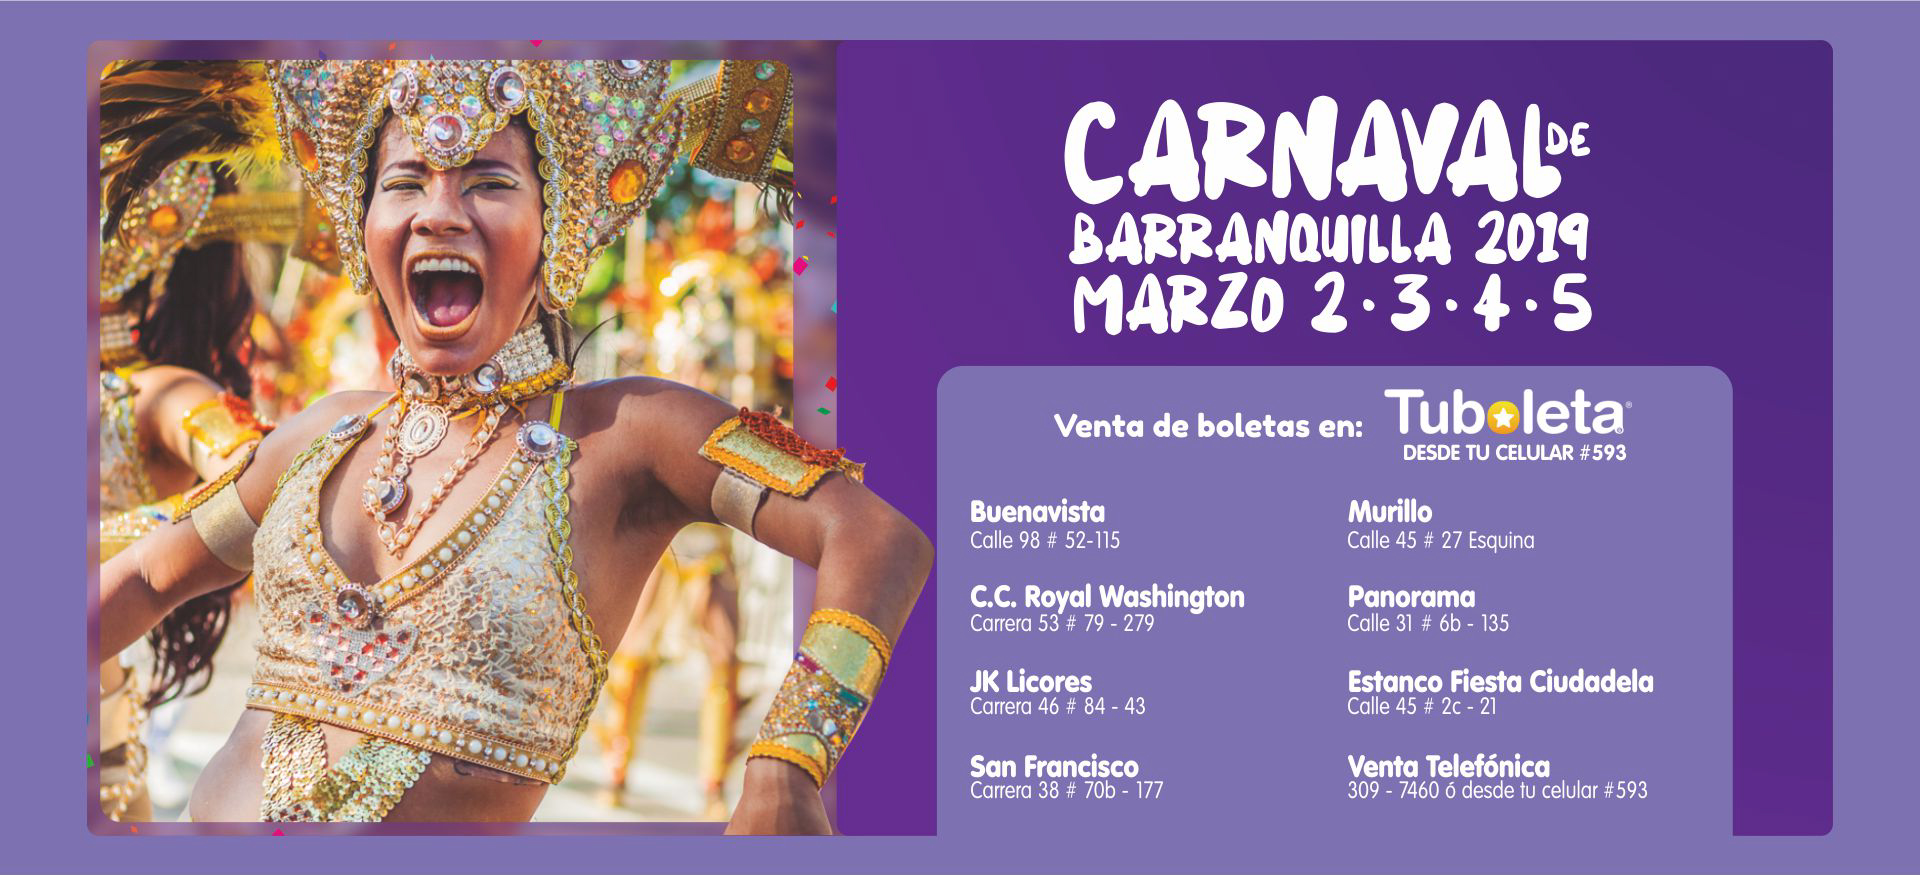 Desde el 1° de octubre disponible boletería para los desfiles del Carnaval 2019